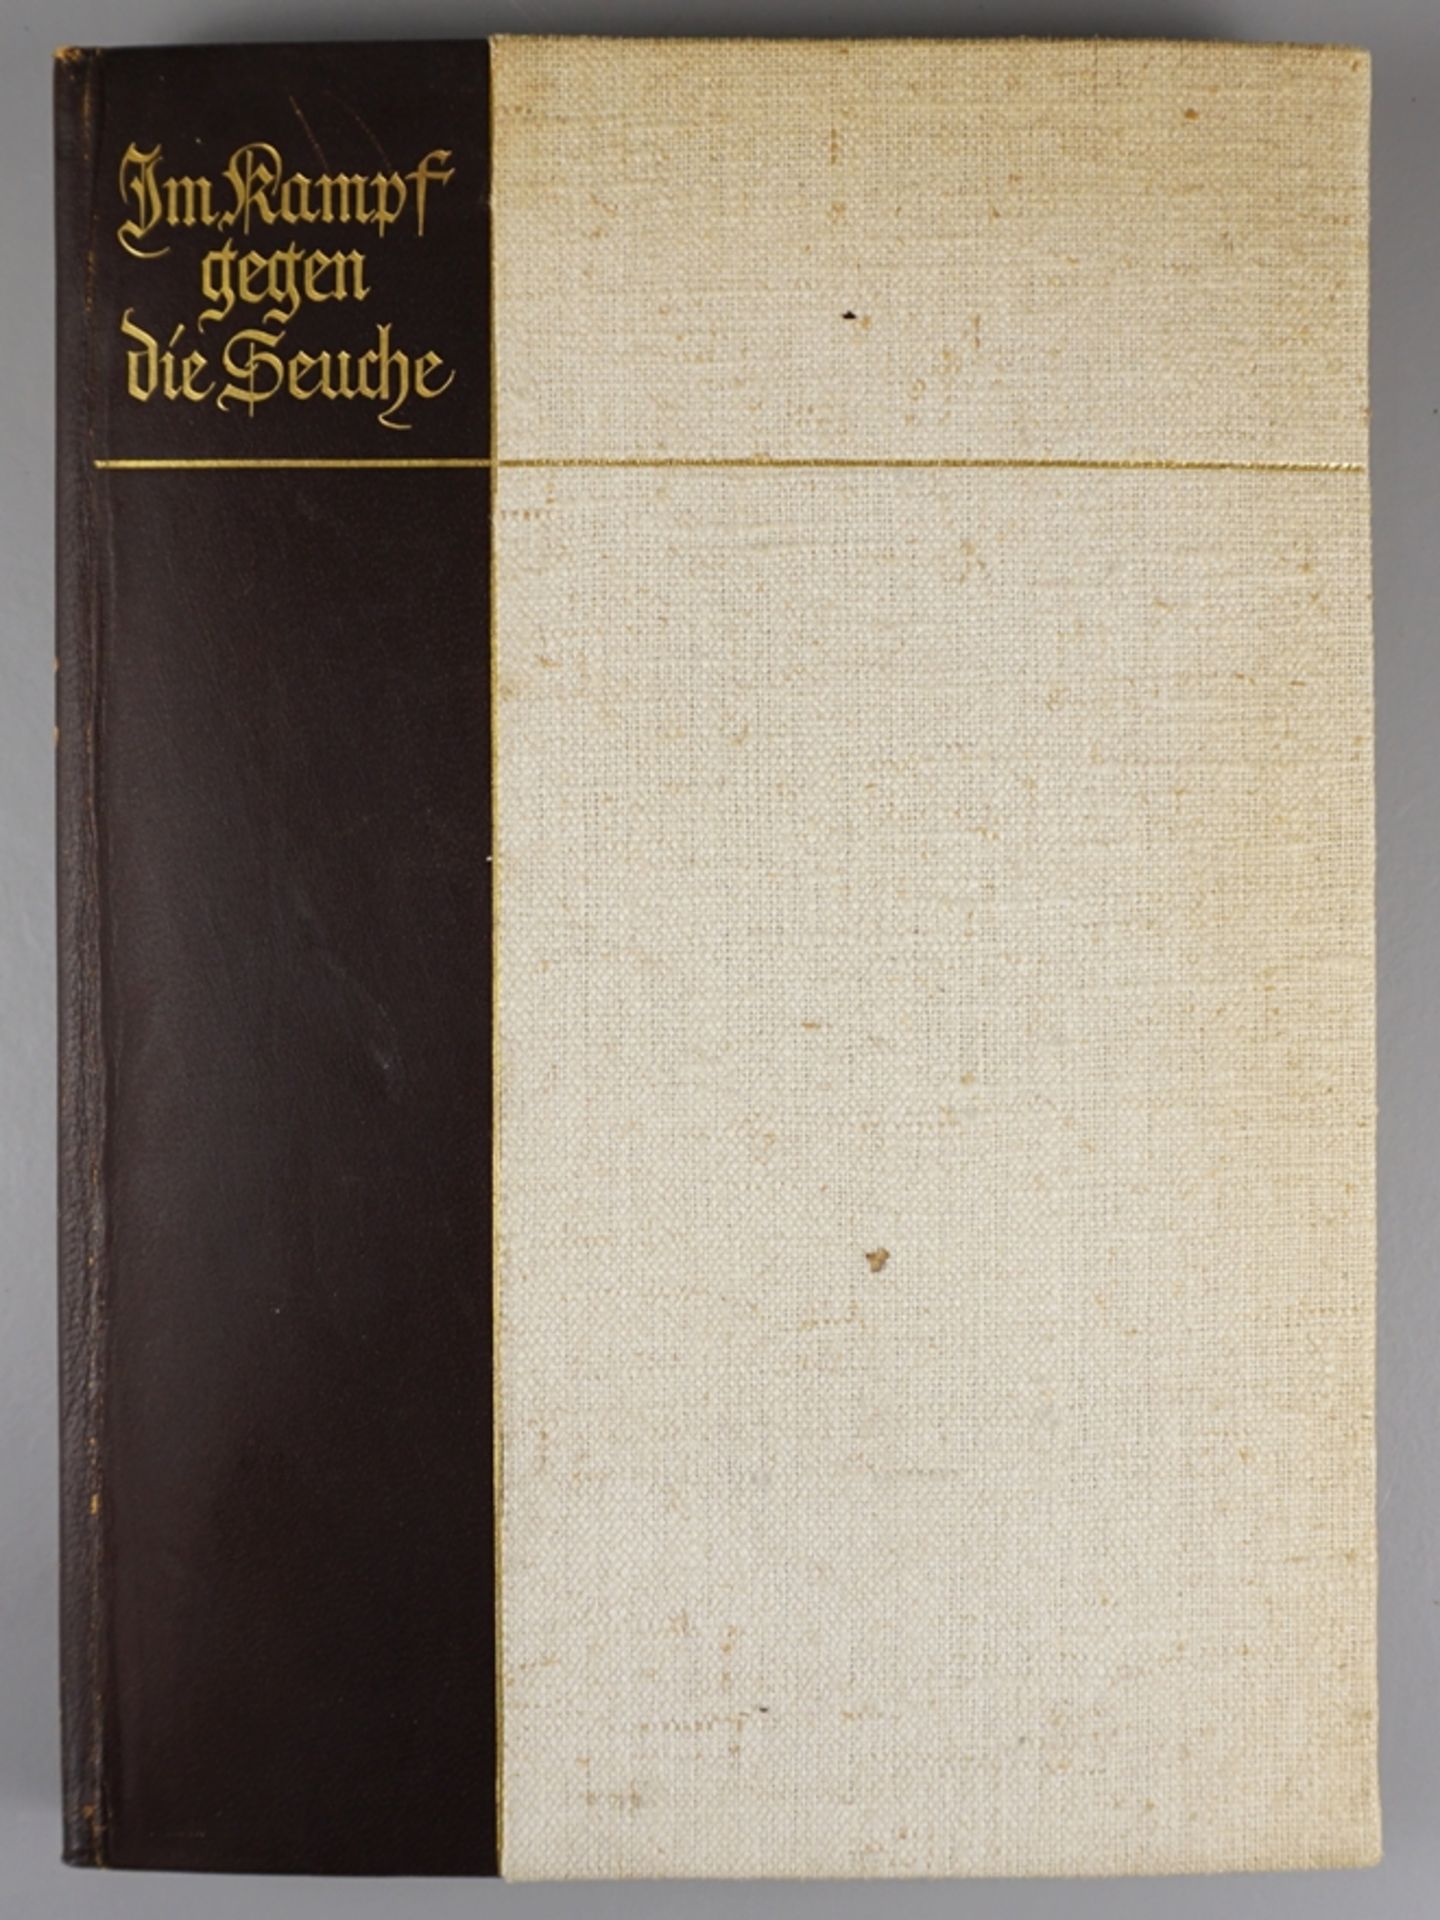 Im Kampf gegen die Seuche, Schülke & Mayr AG, 1939